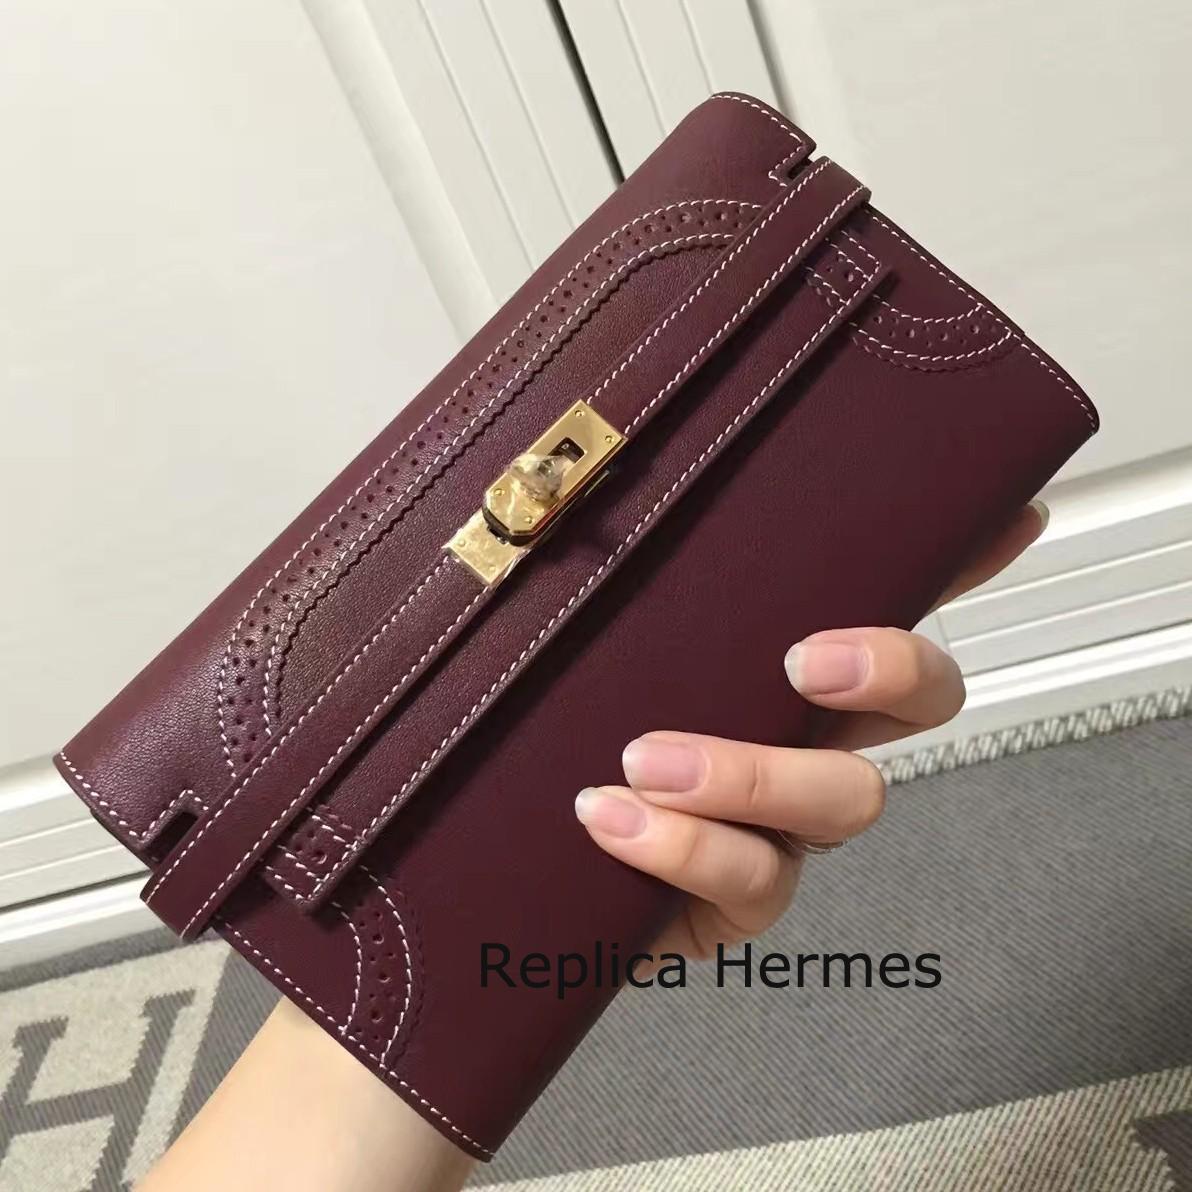 Luxury Replica Hermes Kelly Ghillies Wallet In Bordeaux Swift Leather